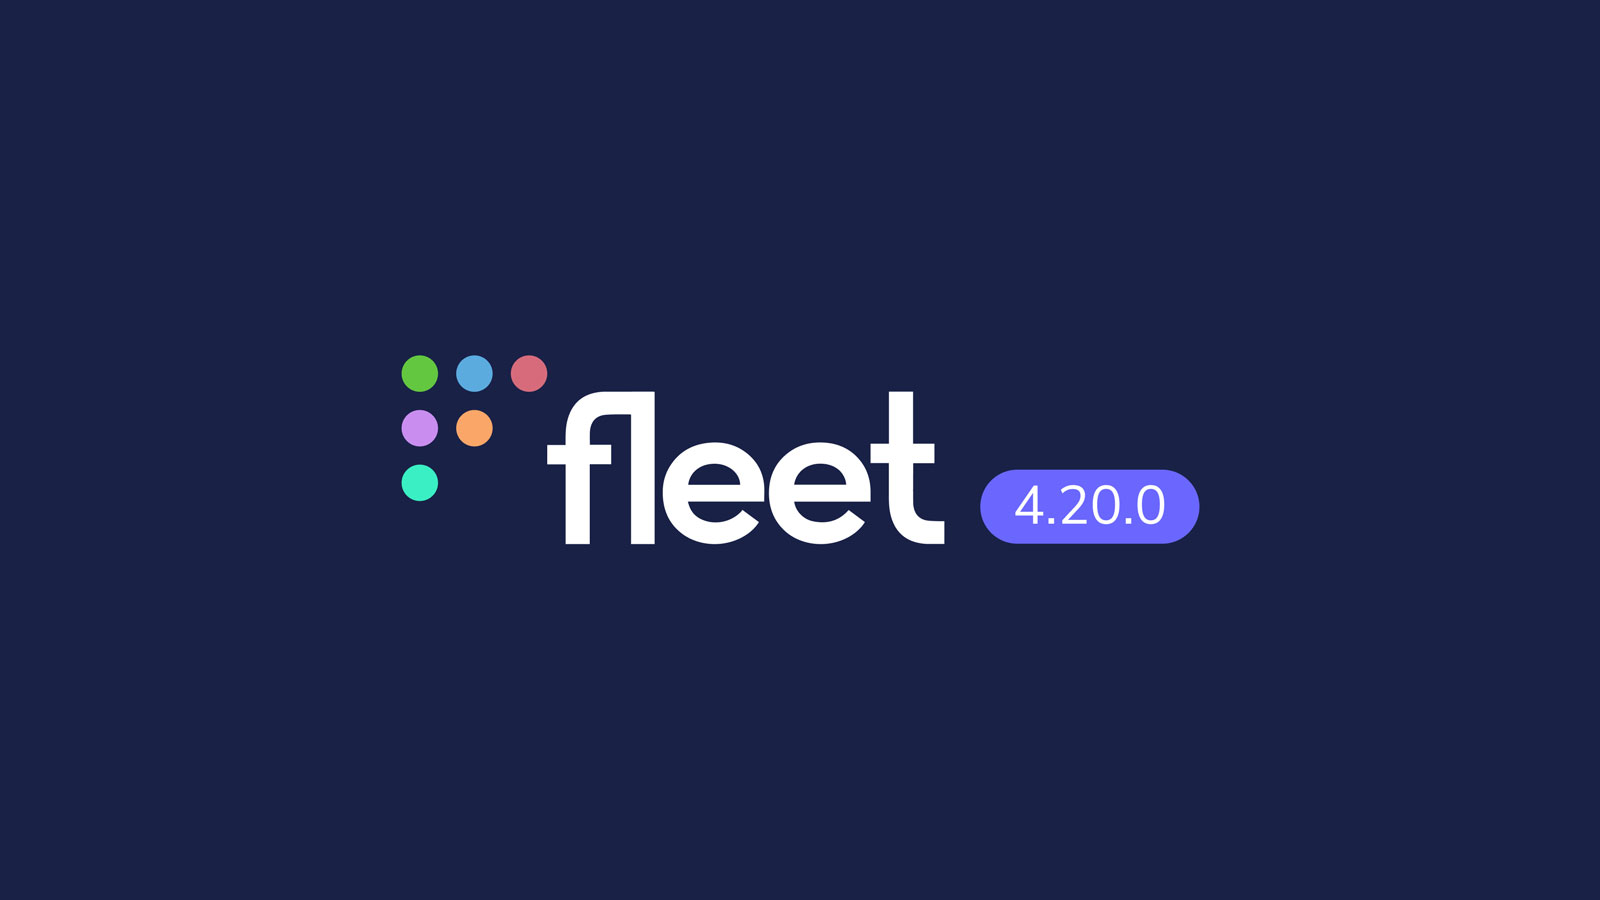 Fleet 4.20.0